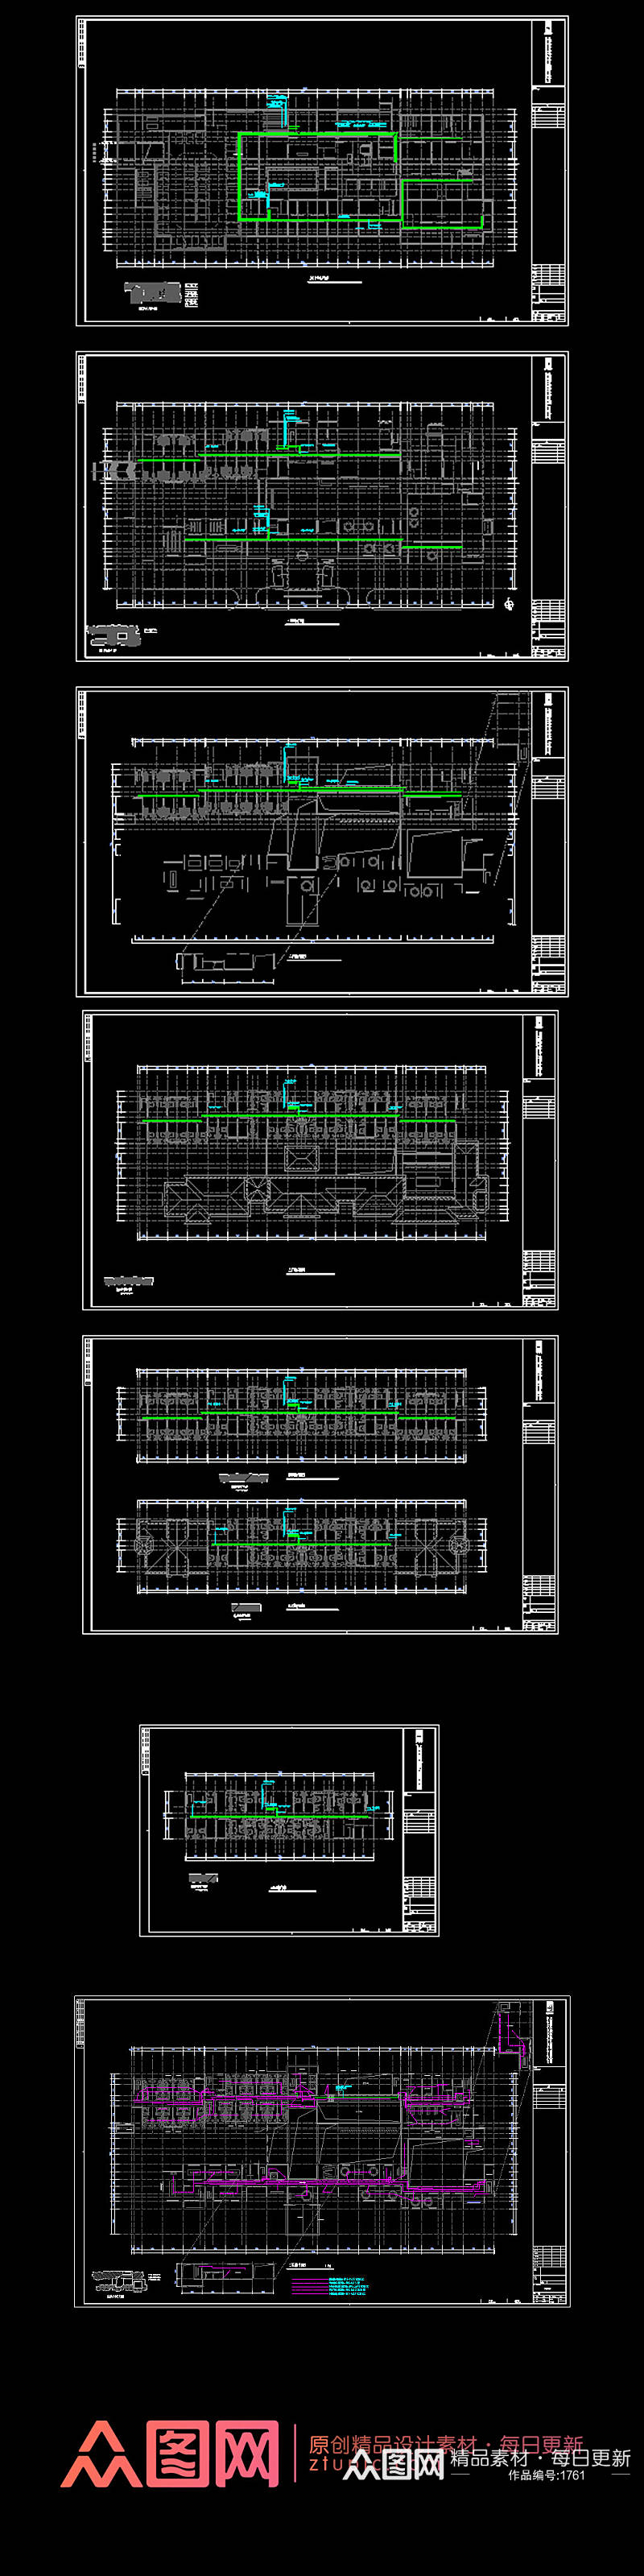 原创酒店电气CAD全套系统平面图素材